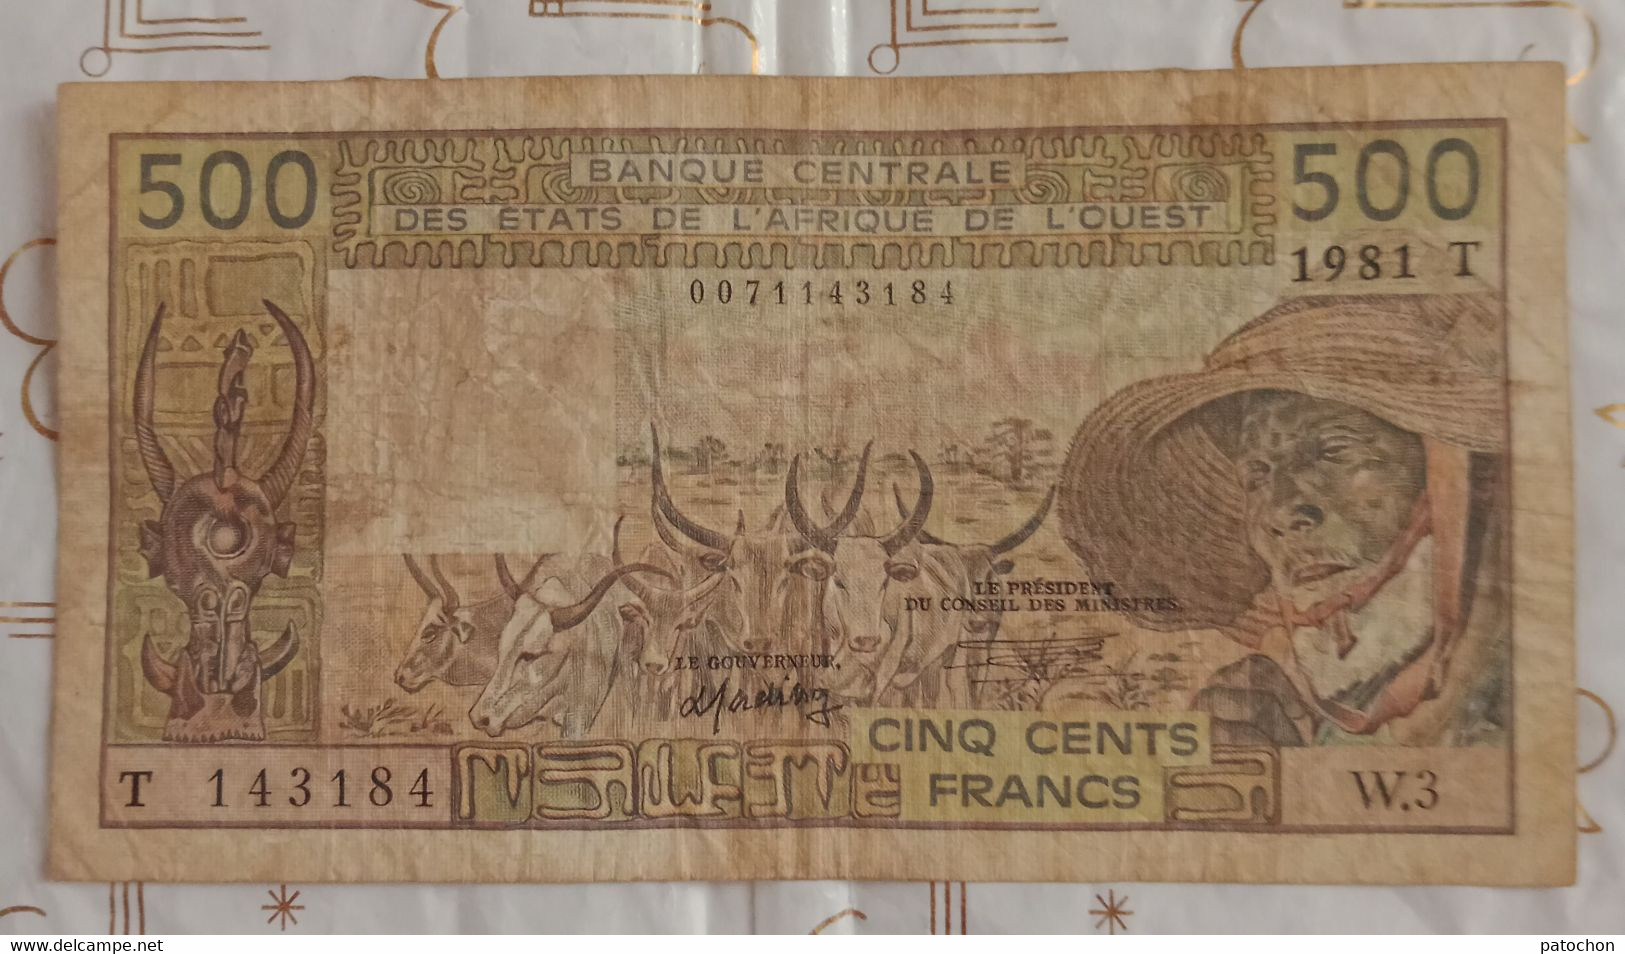 Billet 500 Francs BCEAO 1981 T N°143184 W.3 Colonies - Non Classés